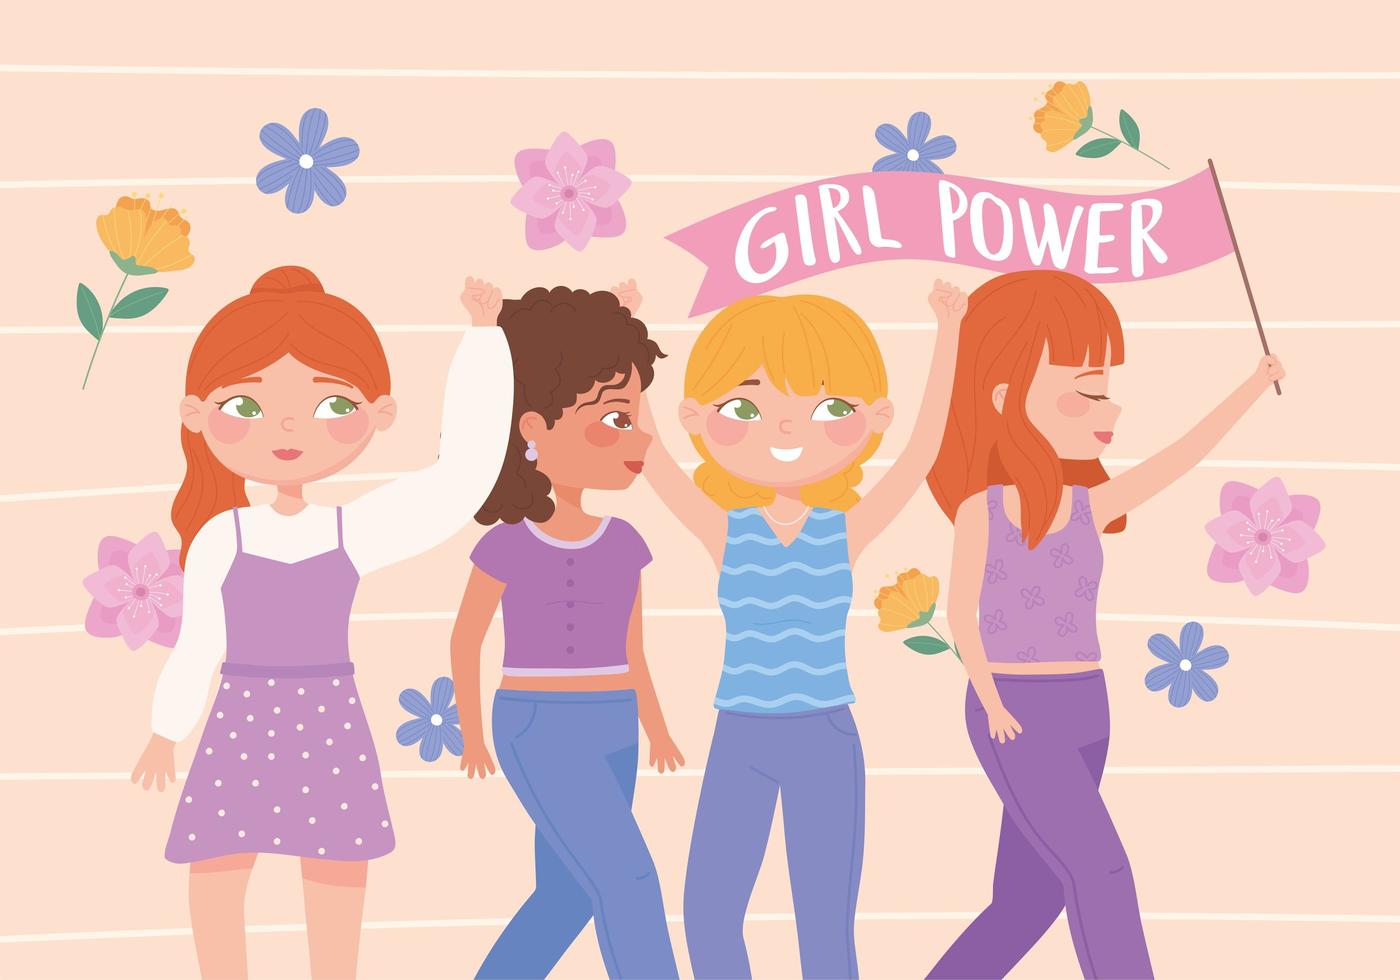 kvinnodag, flickmakt, feminismidéer, kvinnors egenmakt vektor